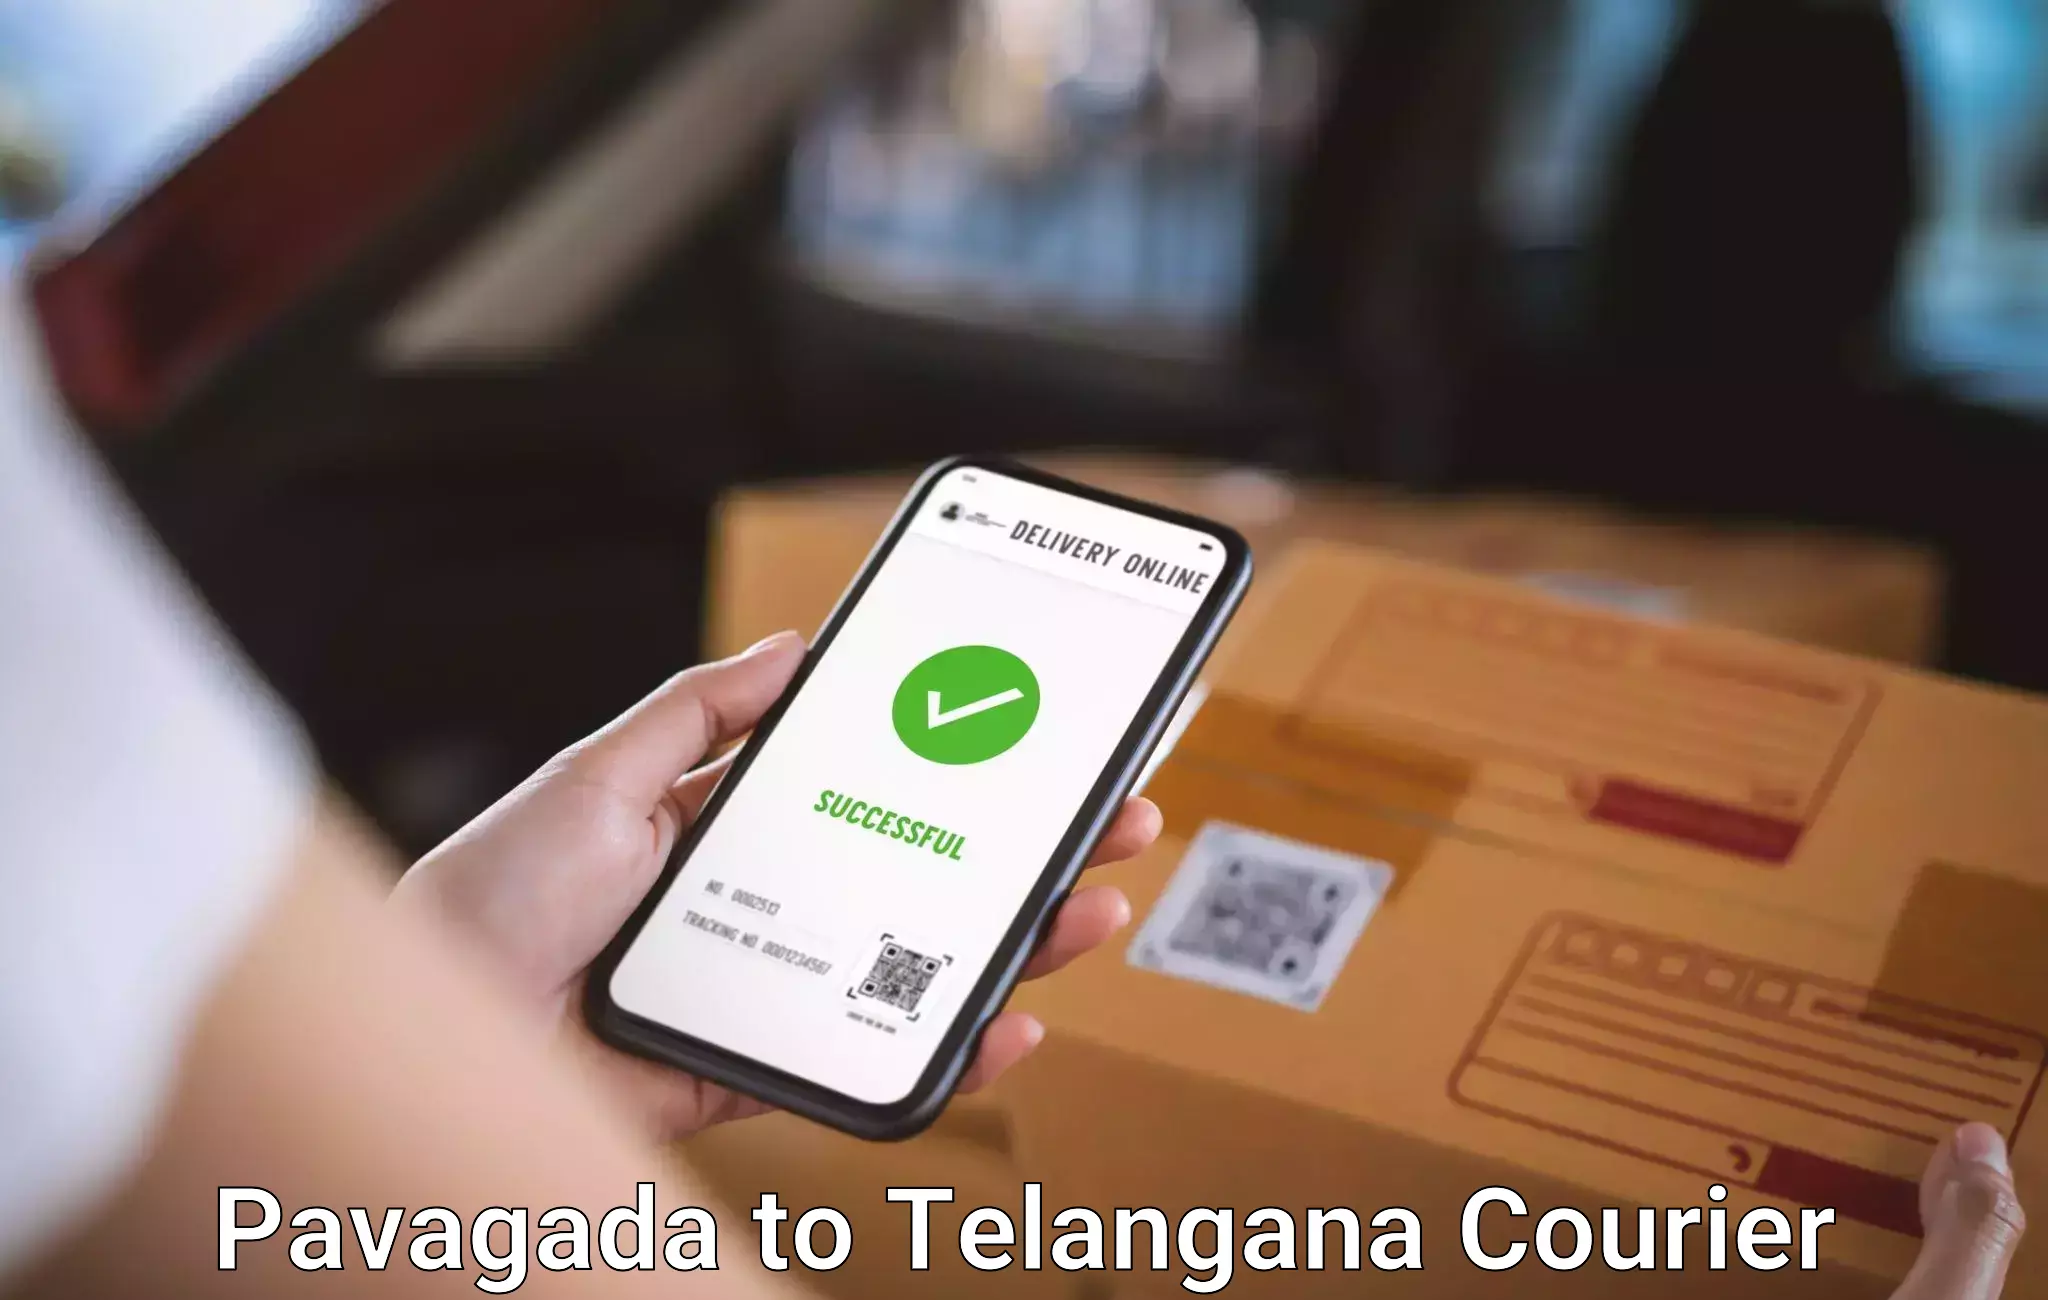 Baggage shipping calculator Pavagada to Vikarabad